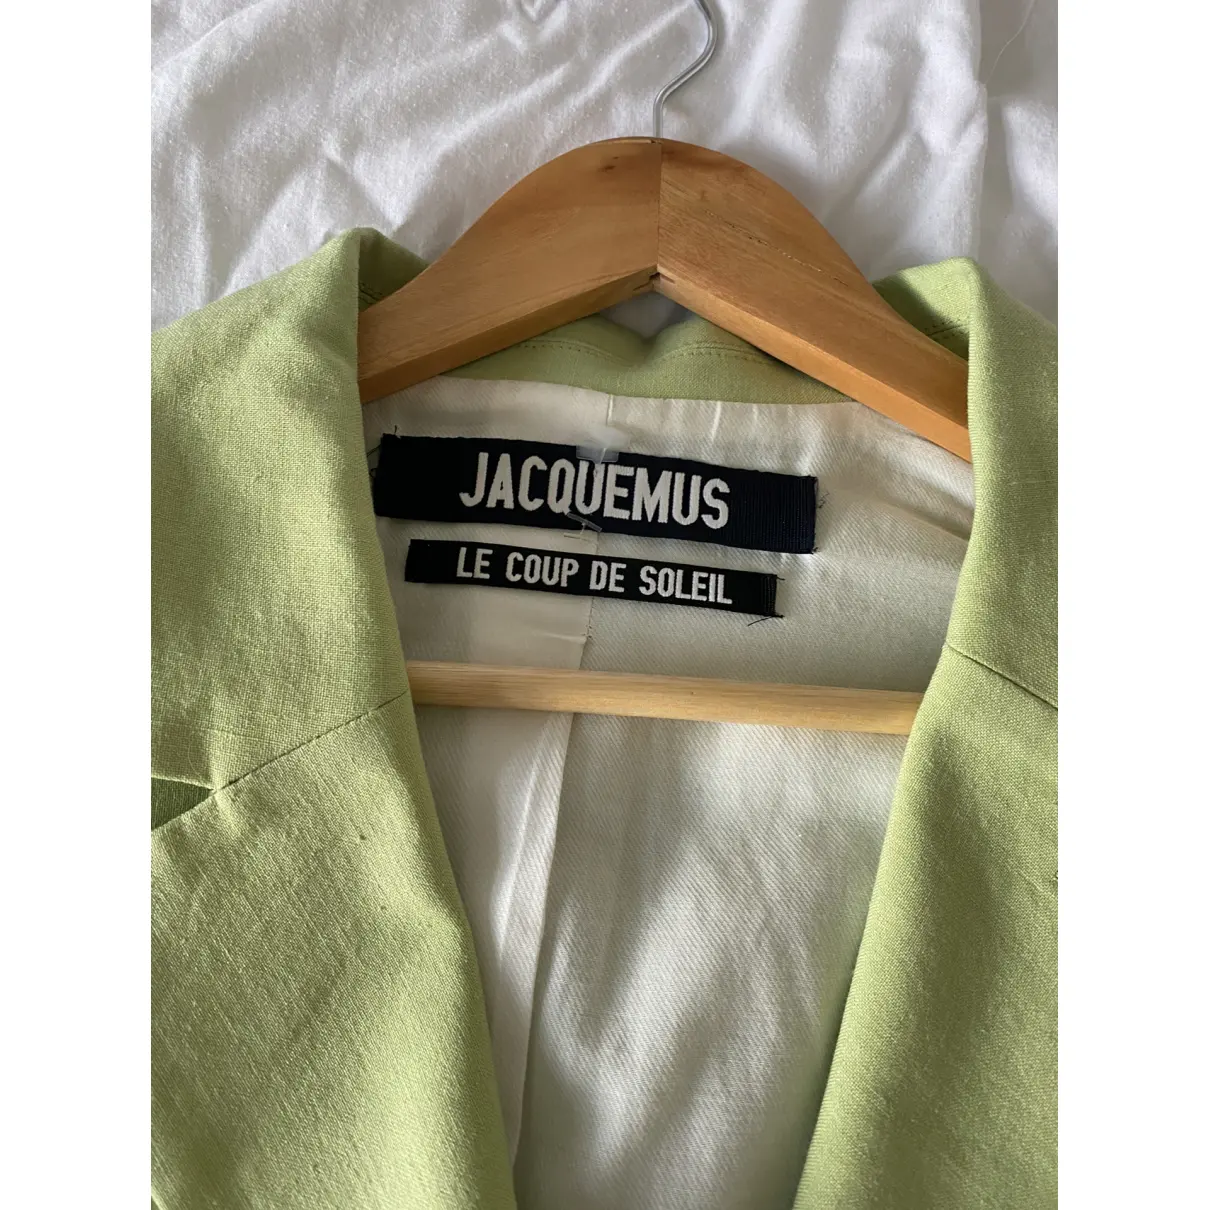 Buy Jacquemus Le coup de soleil linen blazer online